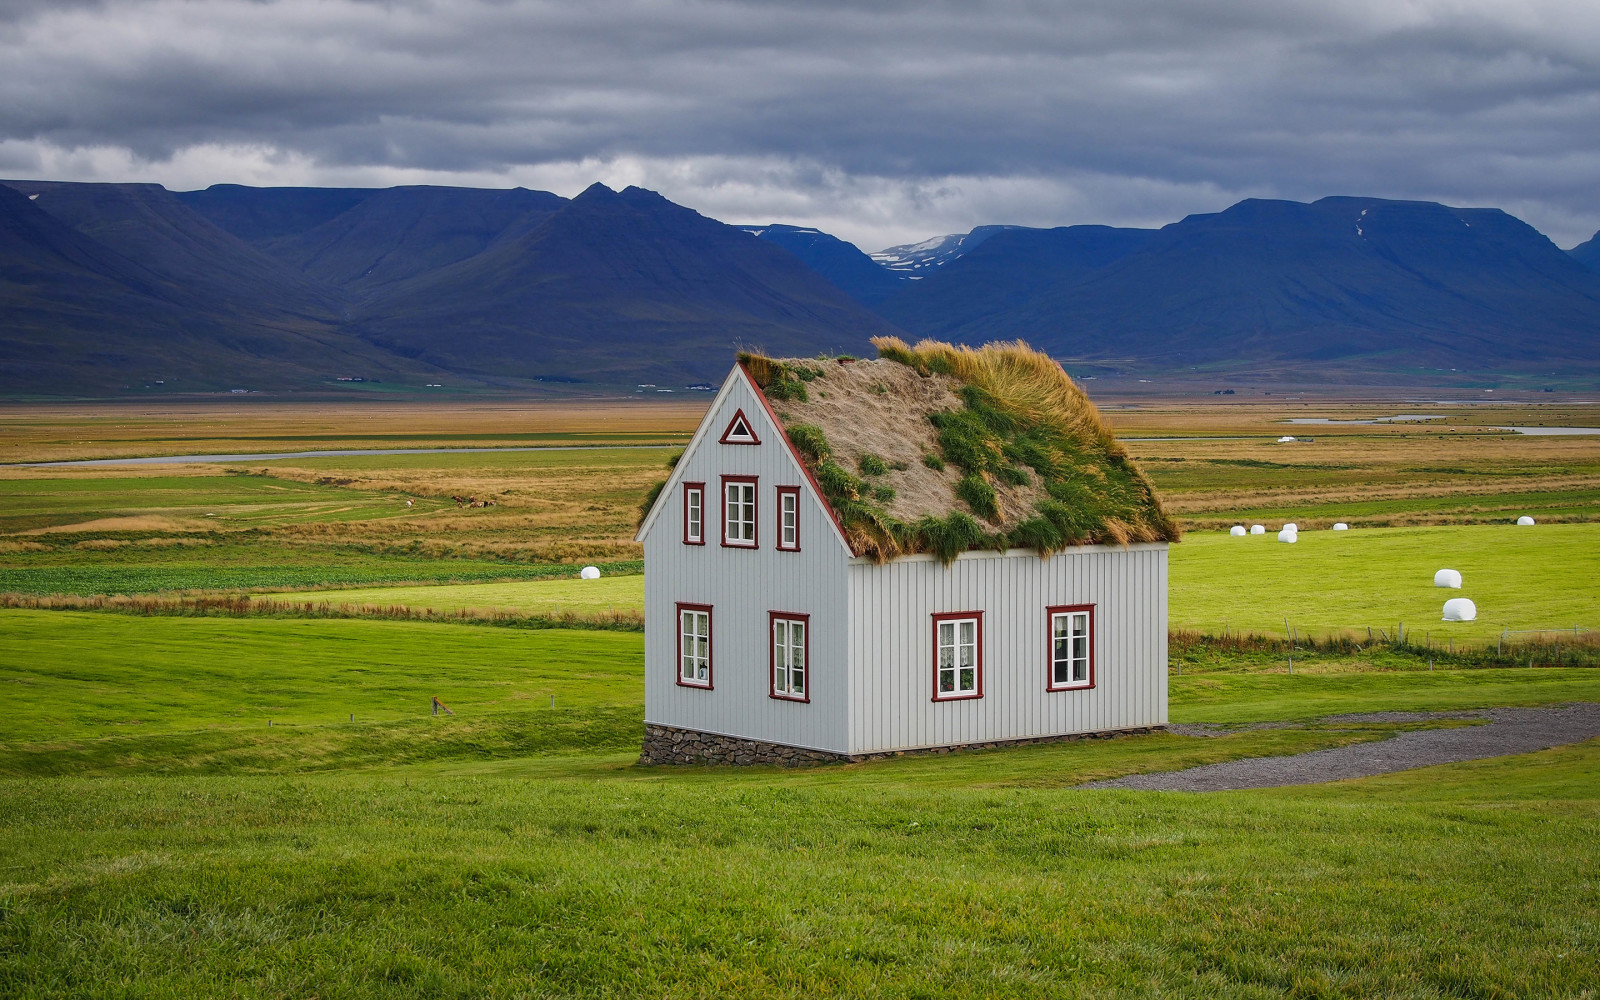 หญ้า, ธรรมชาติ, บ้าน, ภูเขา, ประเทศไอซ์แลนด์, หลังคา, ไอ้บ้าน